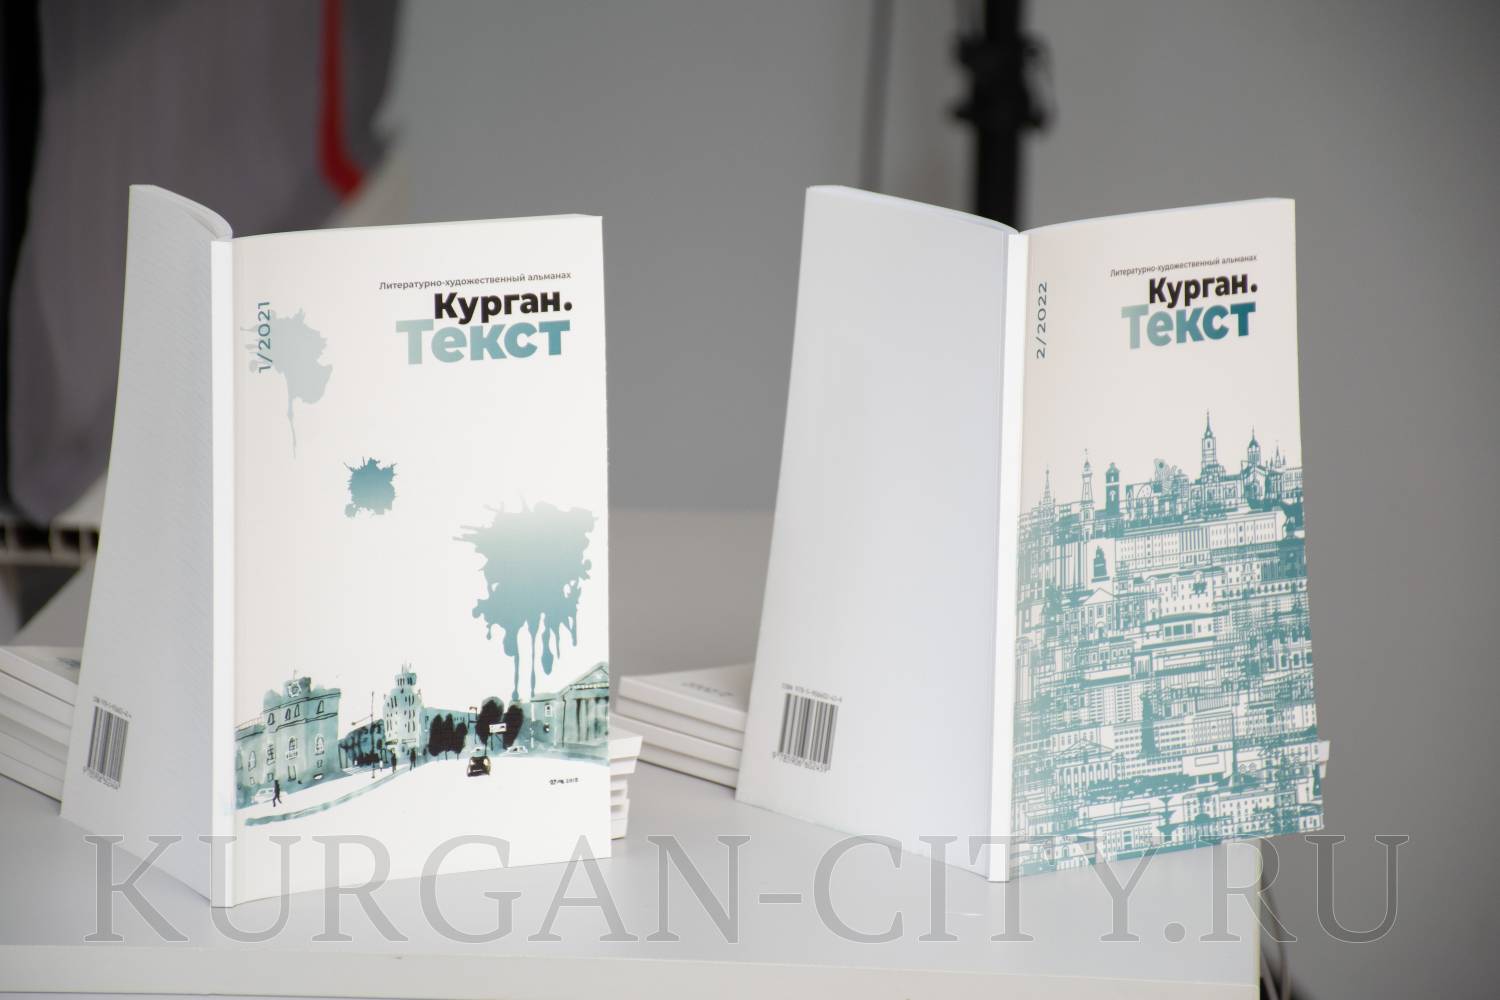 В Маяковке состоялась презентация второго выпуска литературно-художественного альманаха «Курган. Текст».